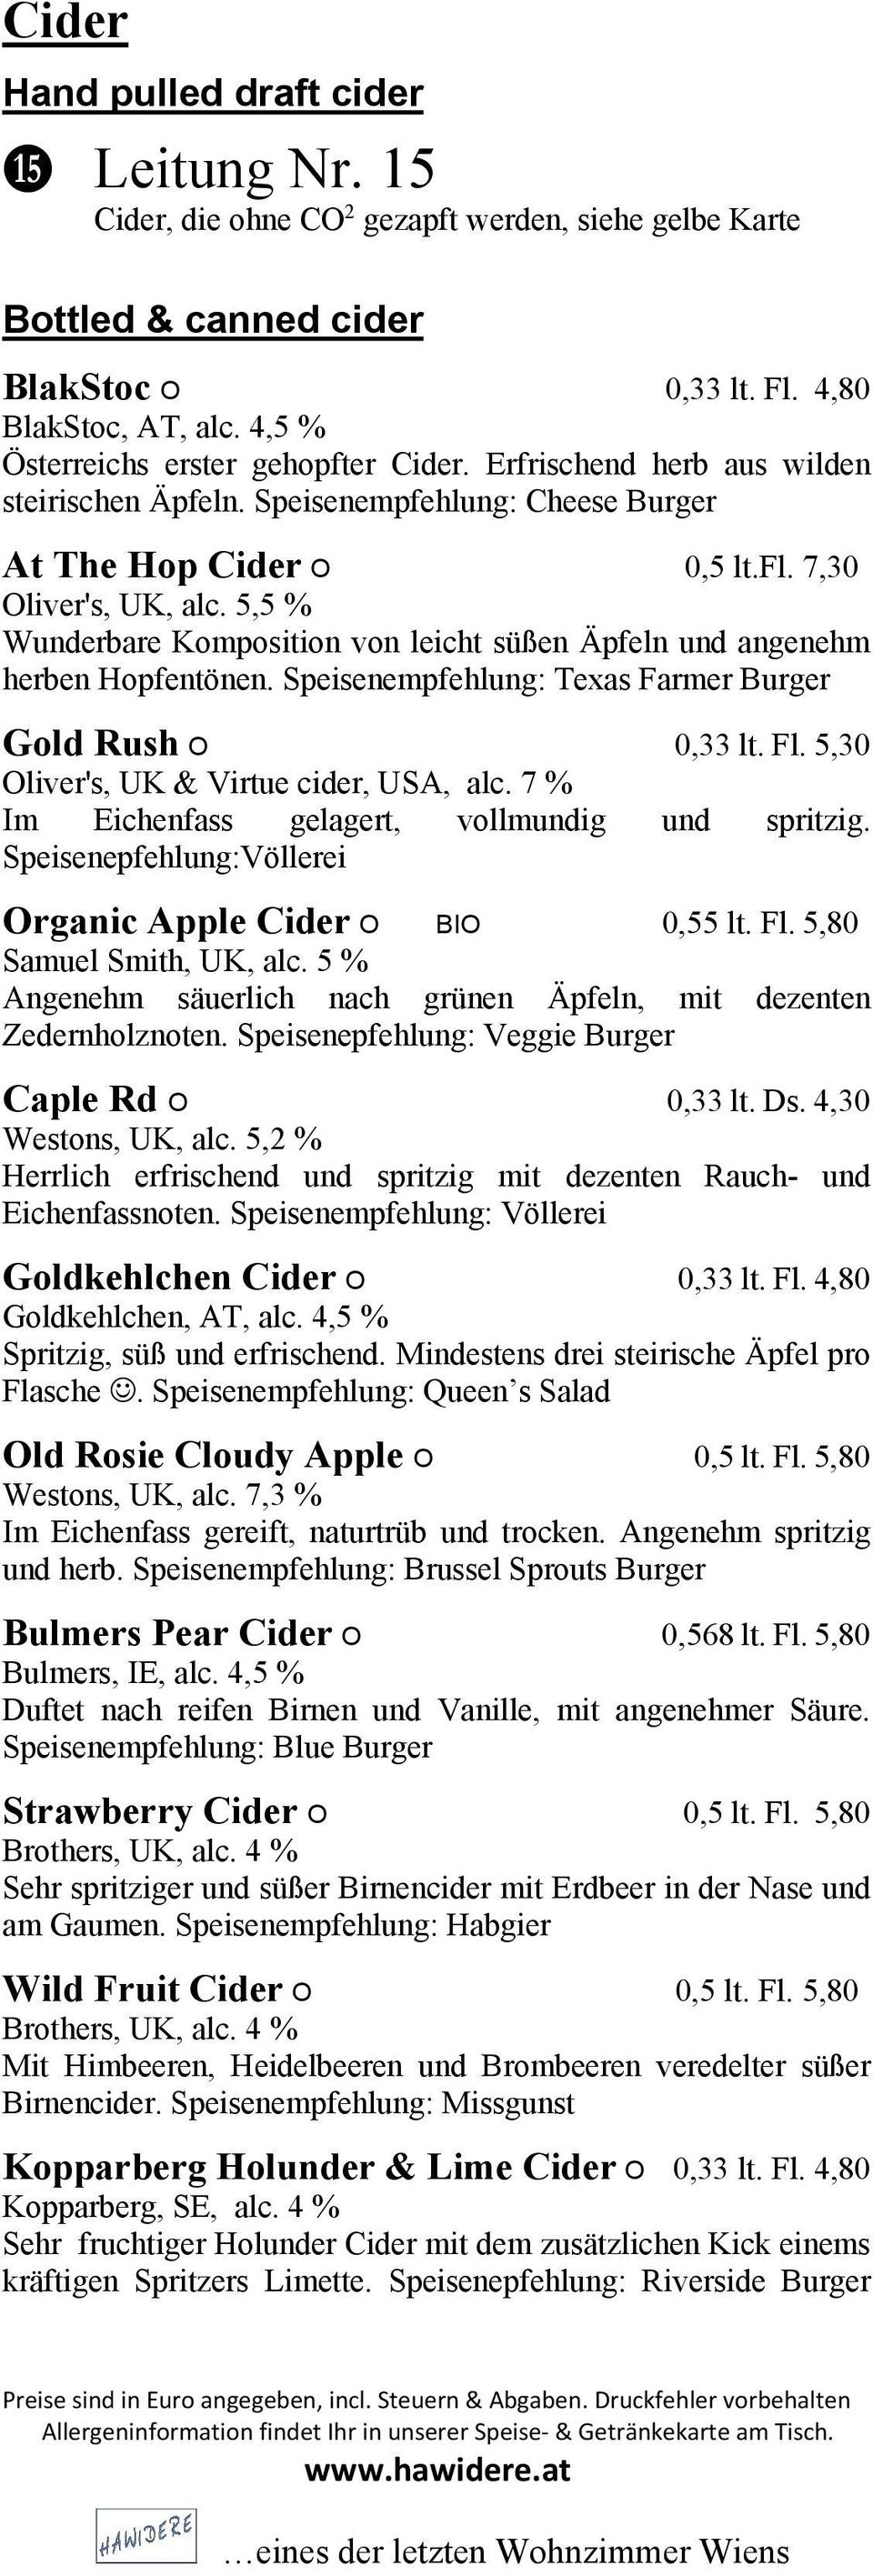 5,5 % Wunderbare Komposition von leicht süßen Äpfeln und angenehm herben Hopfentönen. Speisenempfehlung: Texas Farmer Burger Gold Rush O 0,33 lt. Fl. 5,30 Oliver's, UK & Virtue cider, USA, alc.